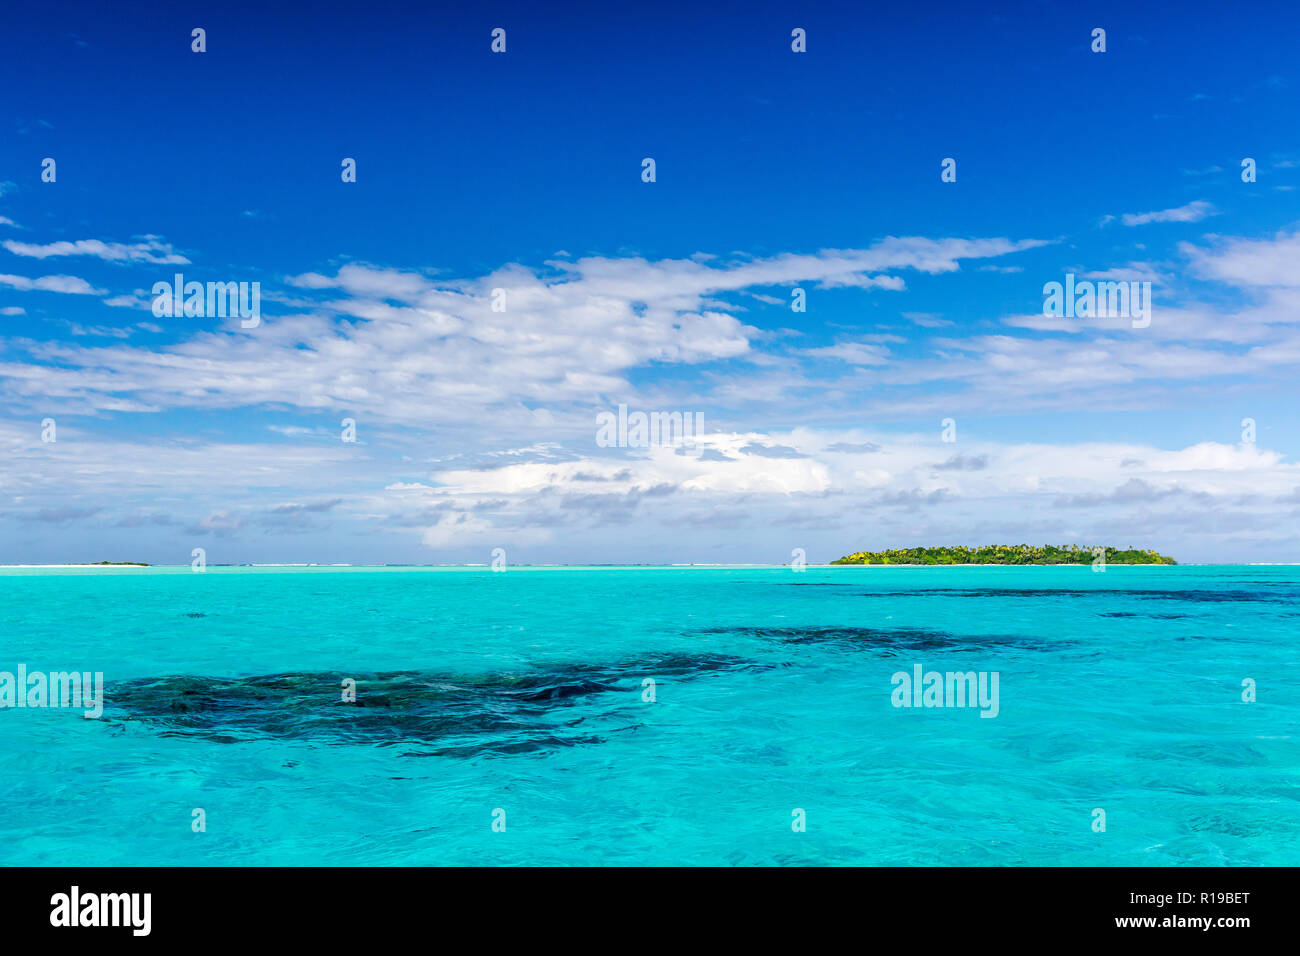 Le acque turchesi di uno dei piedi Isola, Aitutaki, Isole Cook. Foto Stock